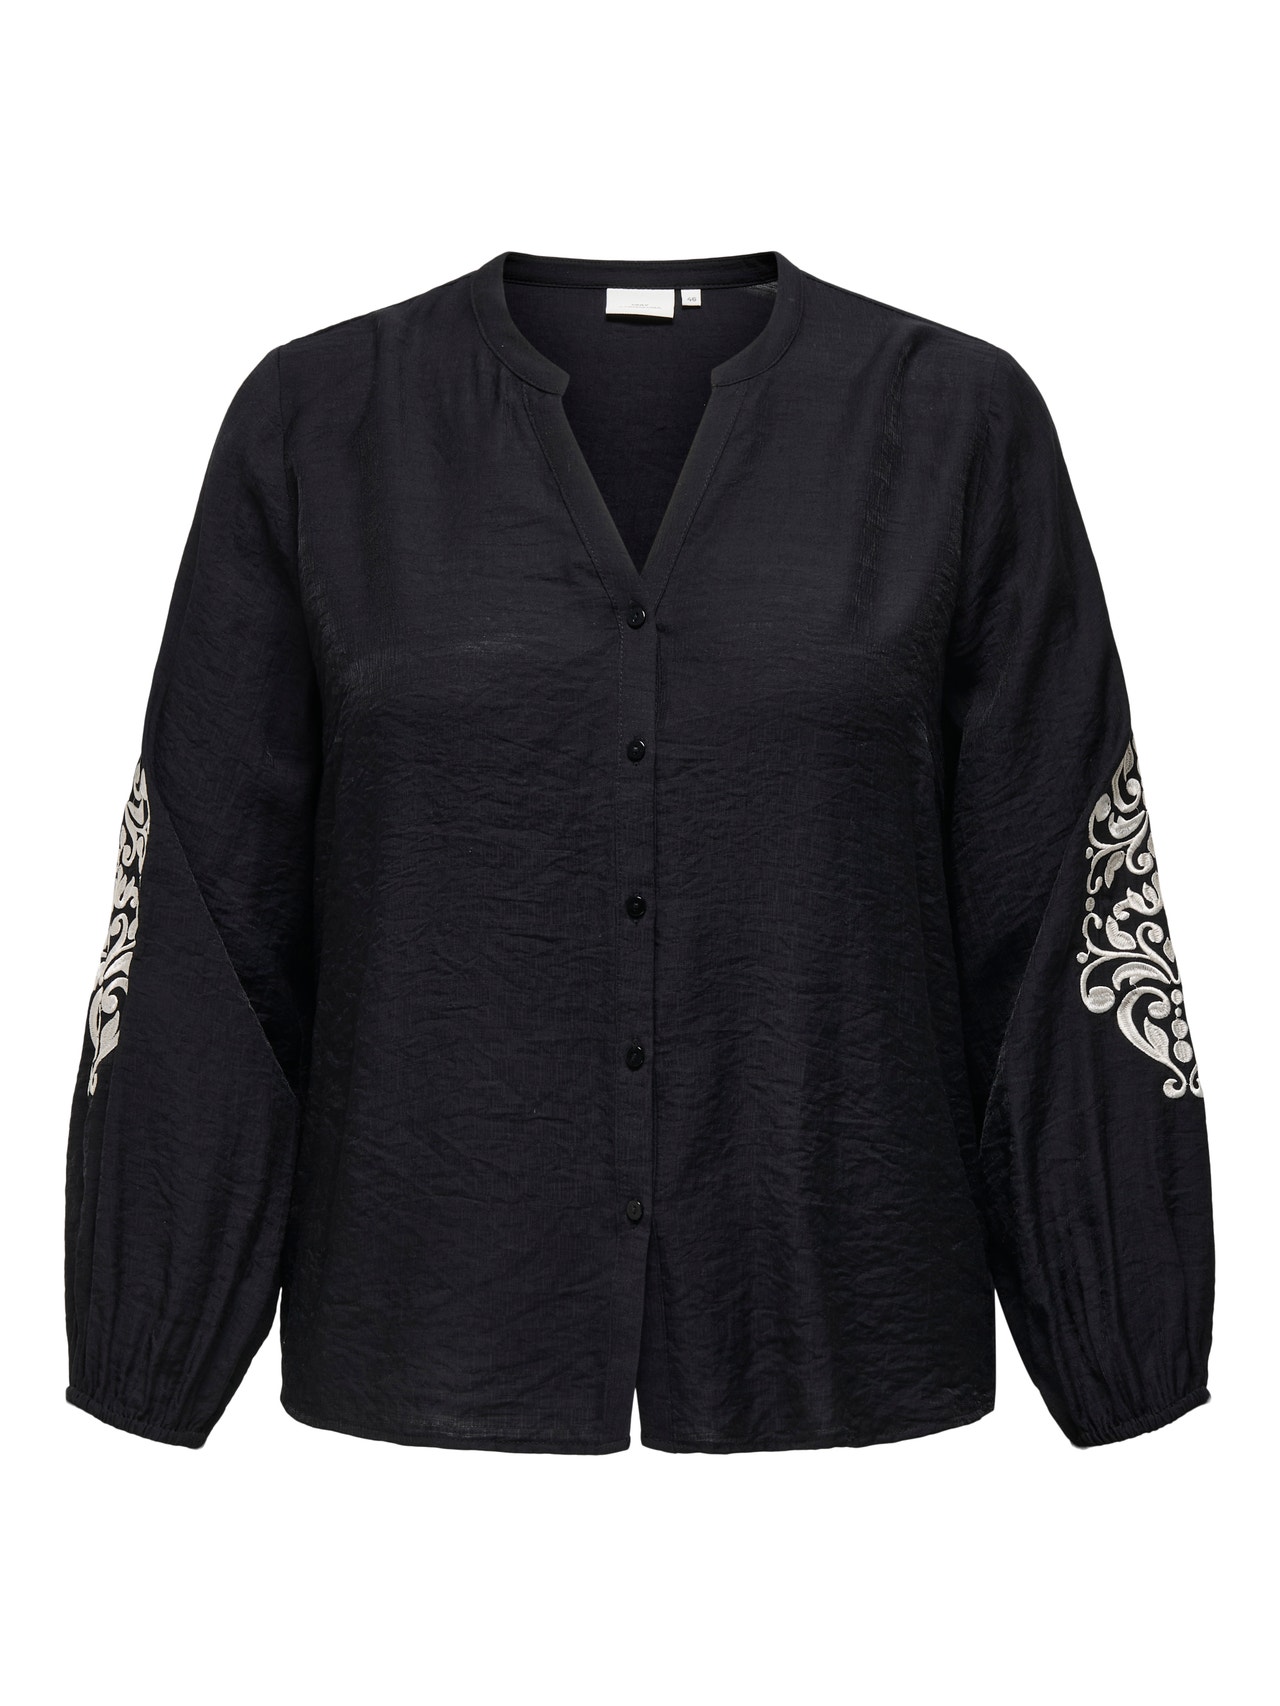 ONLY Camisas Corte regular Cuello de camisa Puños elásticos -Black - 15336080